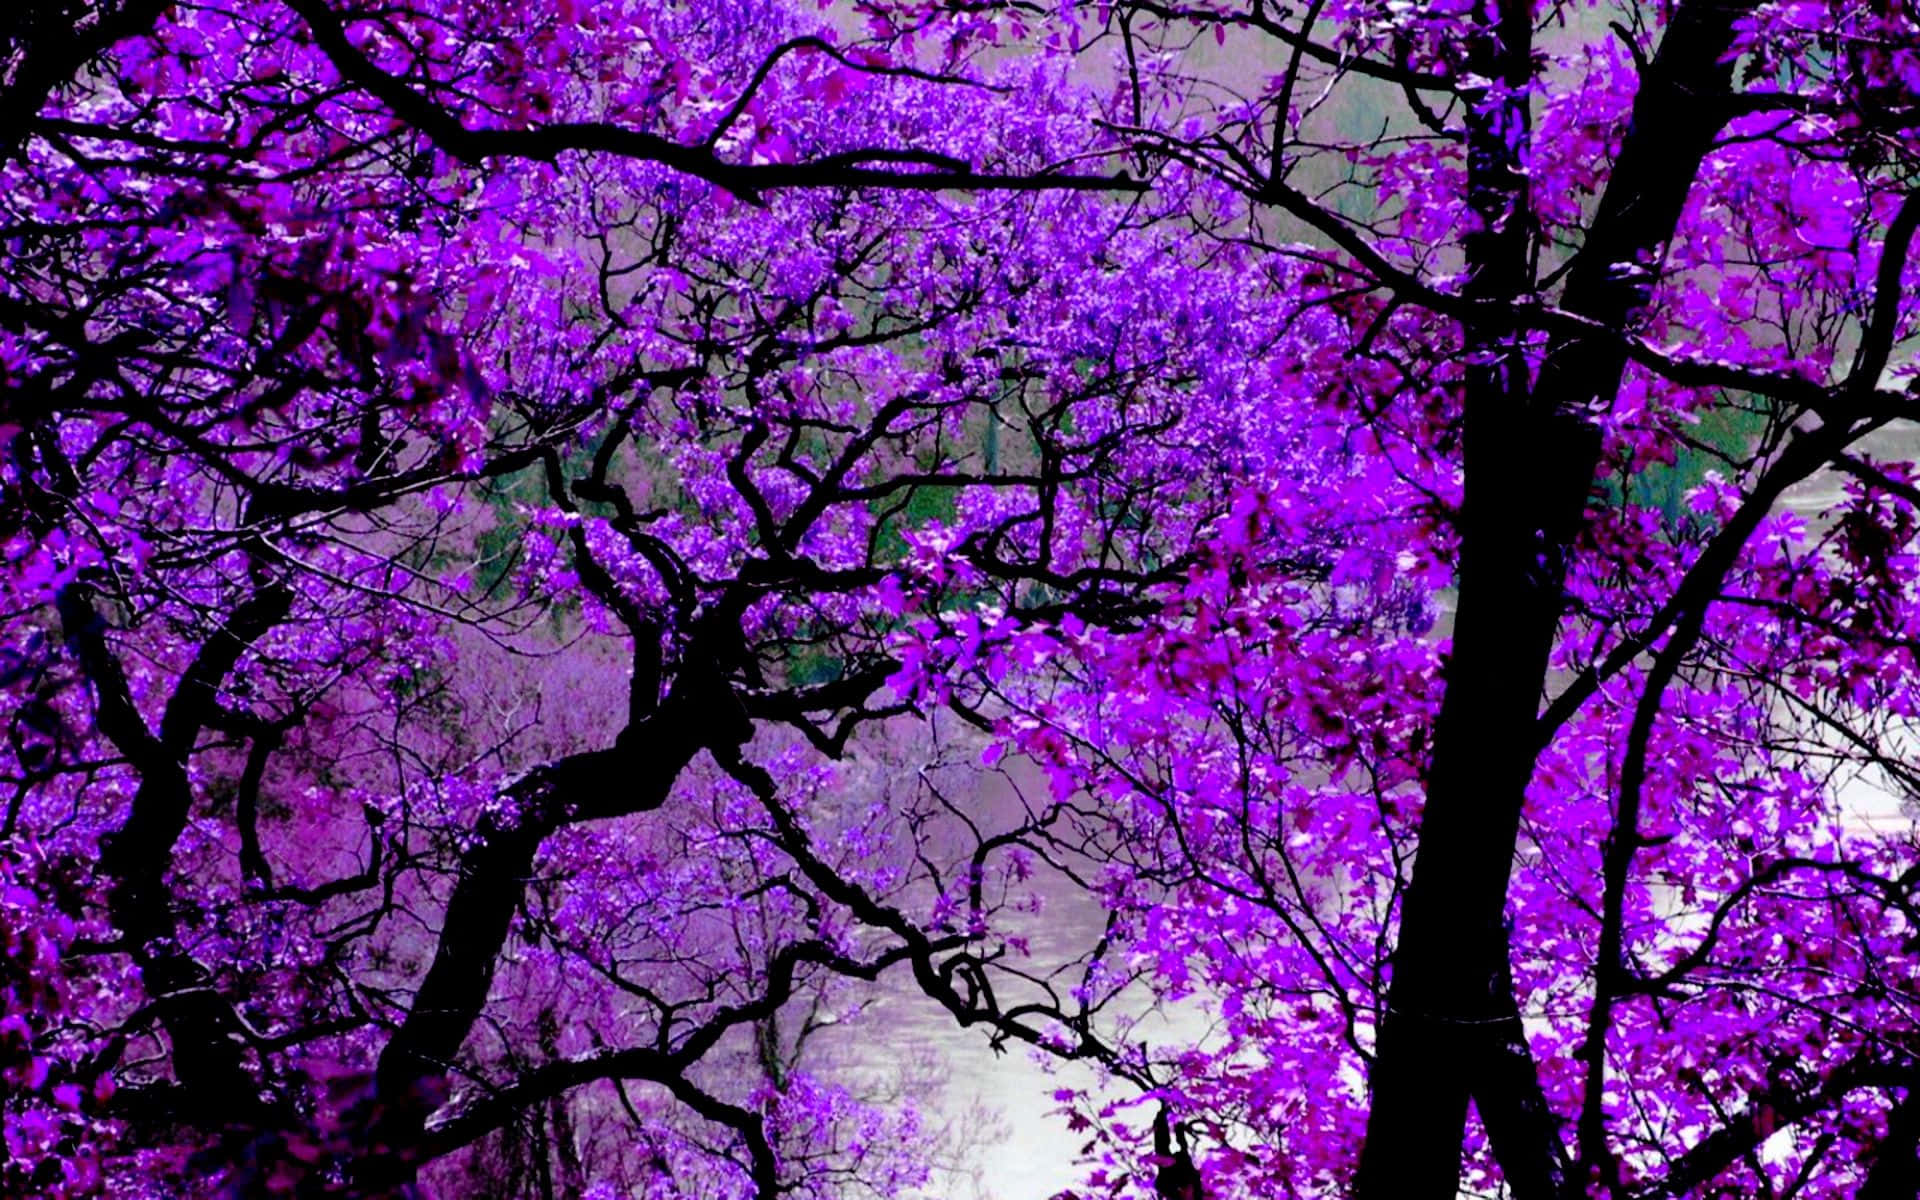 A purple haze of soft, vibrant color